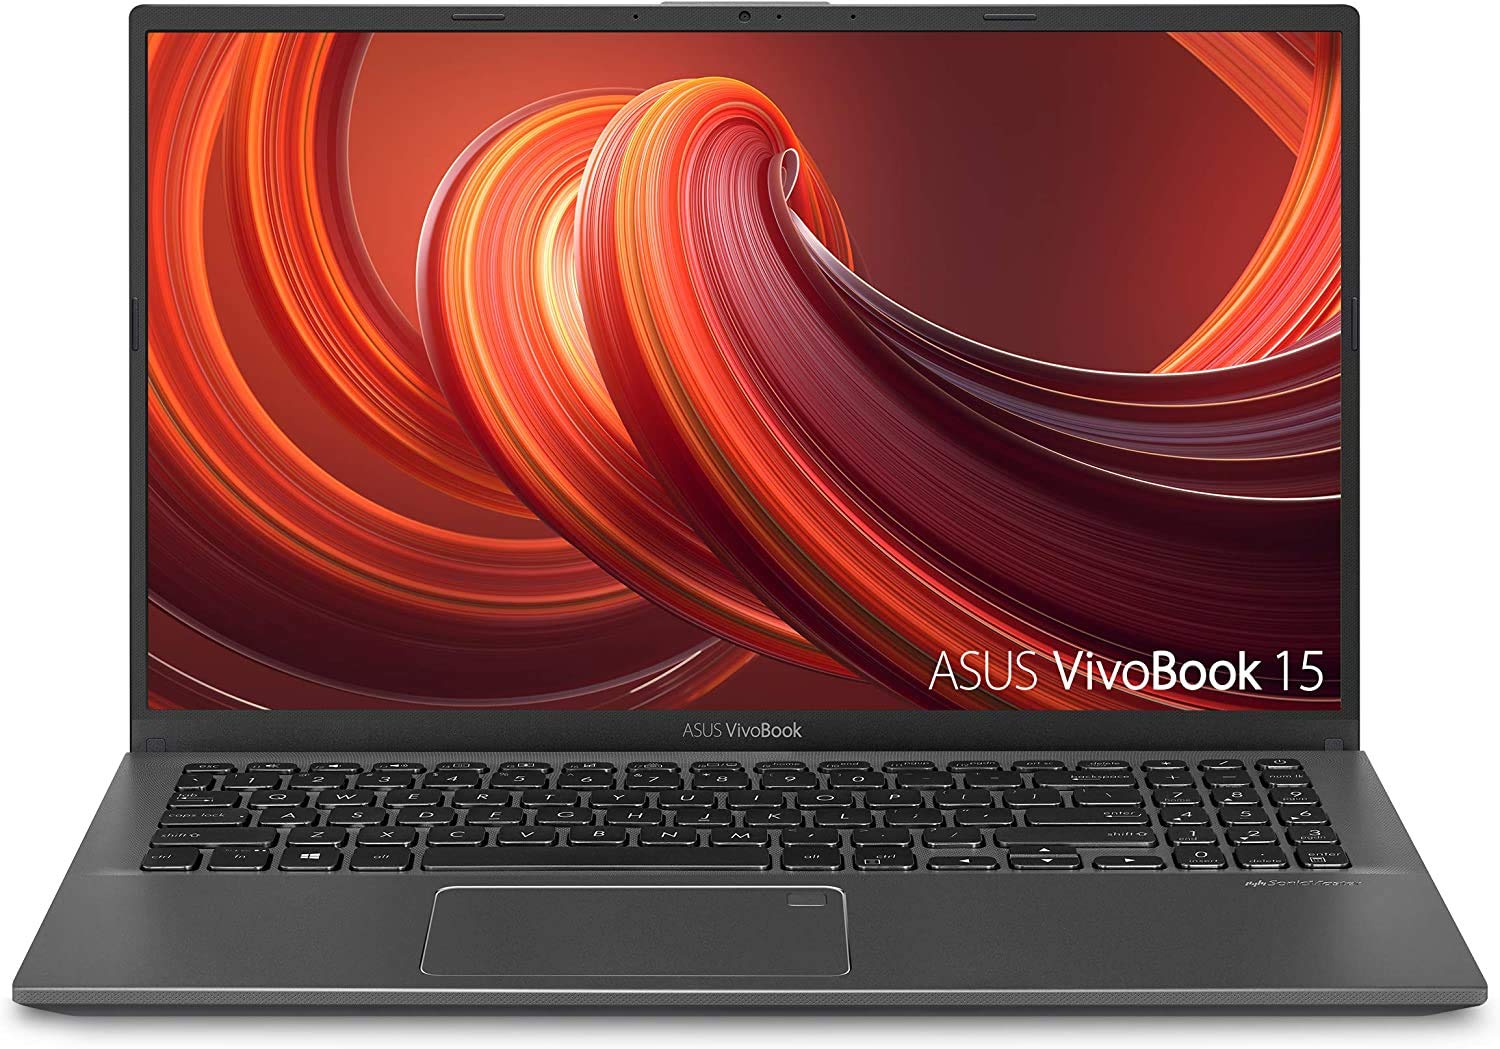 ASUS 2023 F512JA VivoBook Thin and Light Laptop 15.6” FHD Intel 10th Gen Dual-Core i3-1005G1 20GB DDR4 RAM 1TB PCIe SSD HDMI WiFi AC BT USB-C Backlit Fingerprint Windows 10 Pro w/RE USB Drive